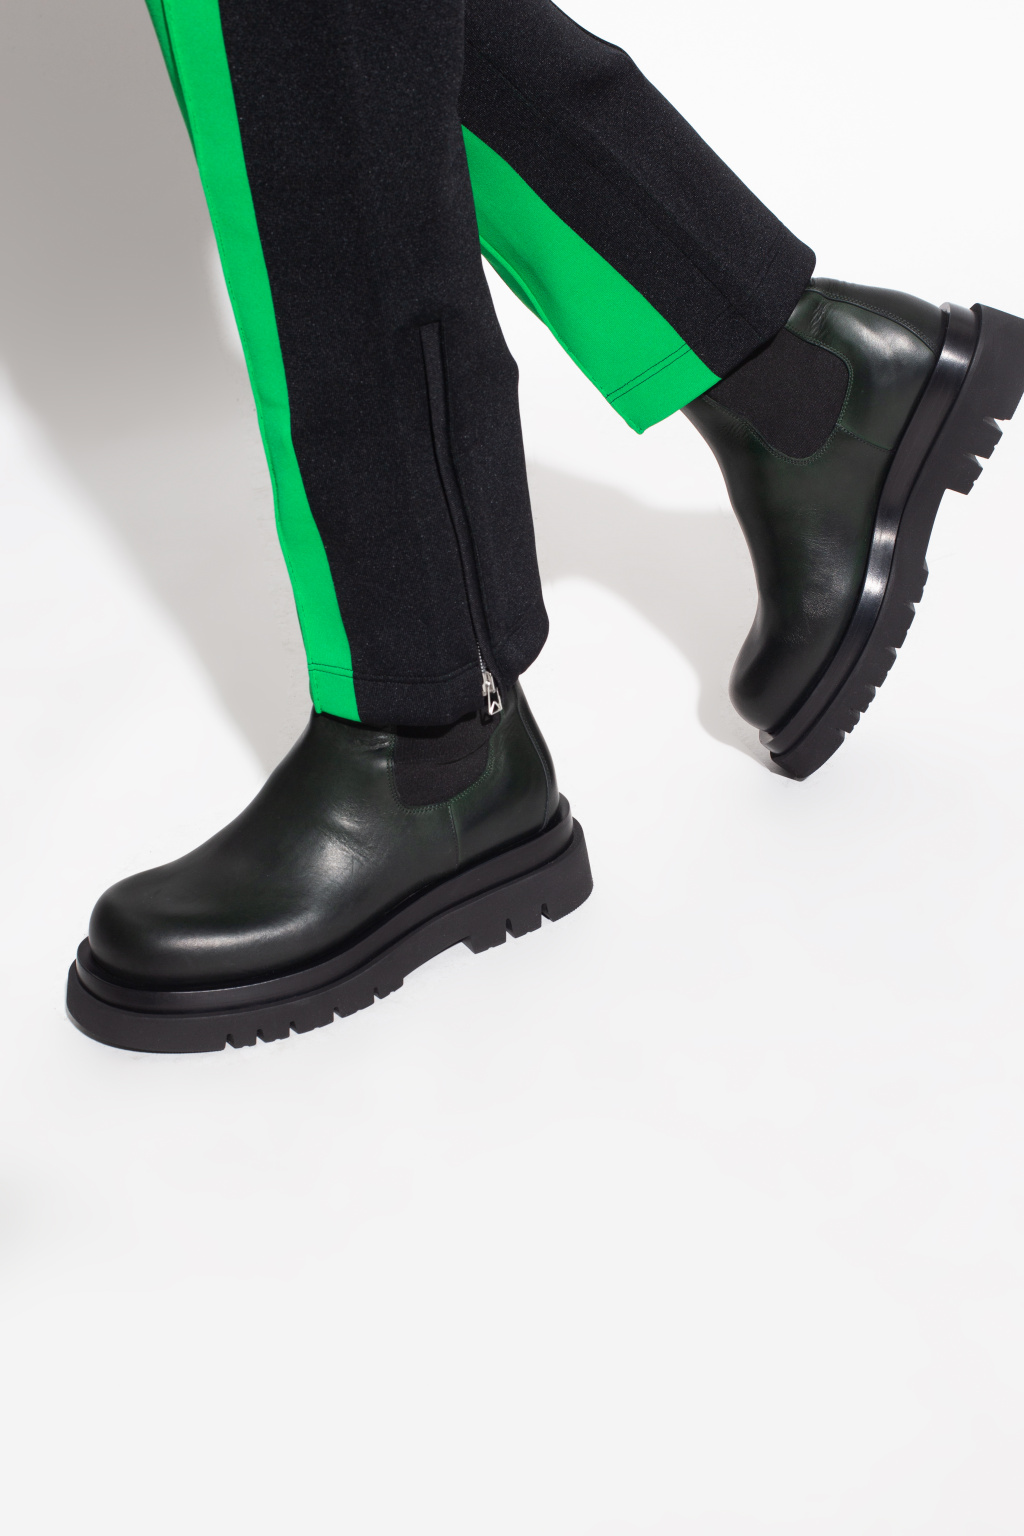 Bottega Veneta ‘Lug’ Chelsea boots | Men's Shoes | Vitkac